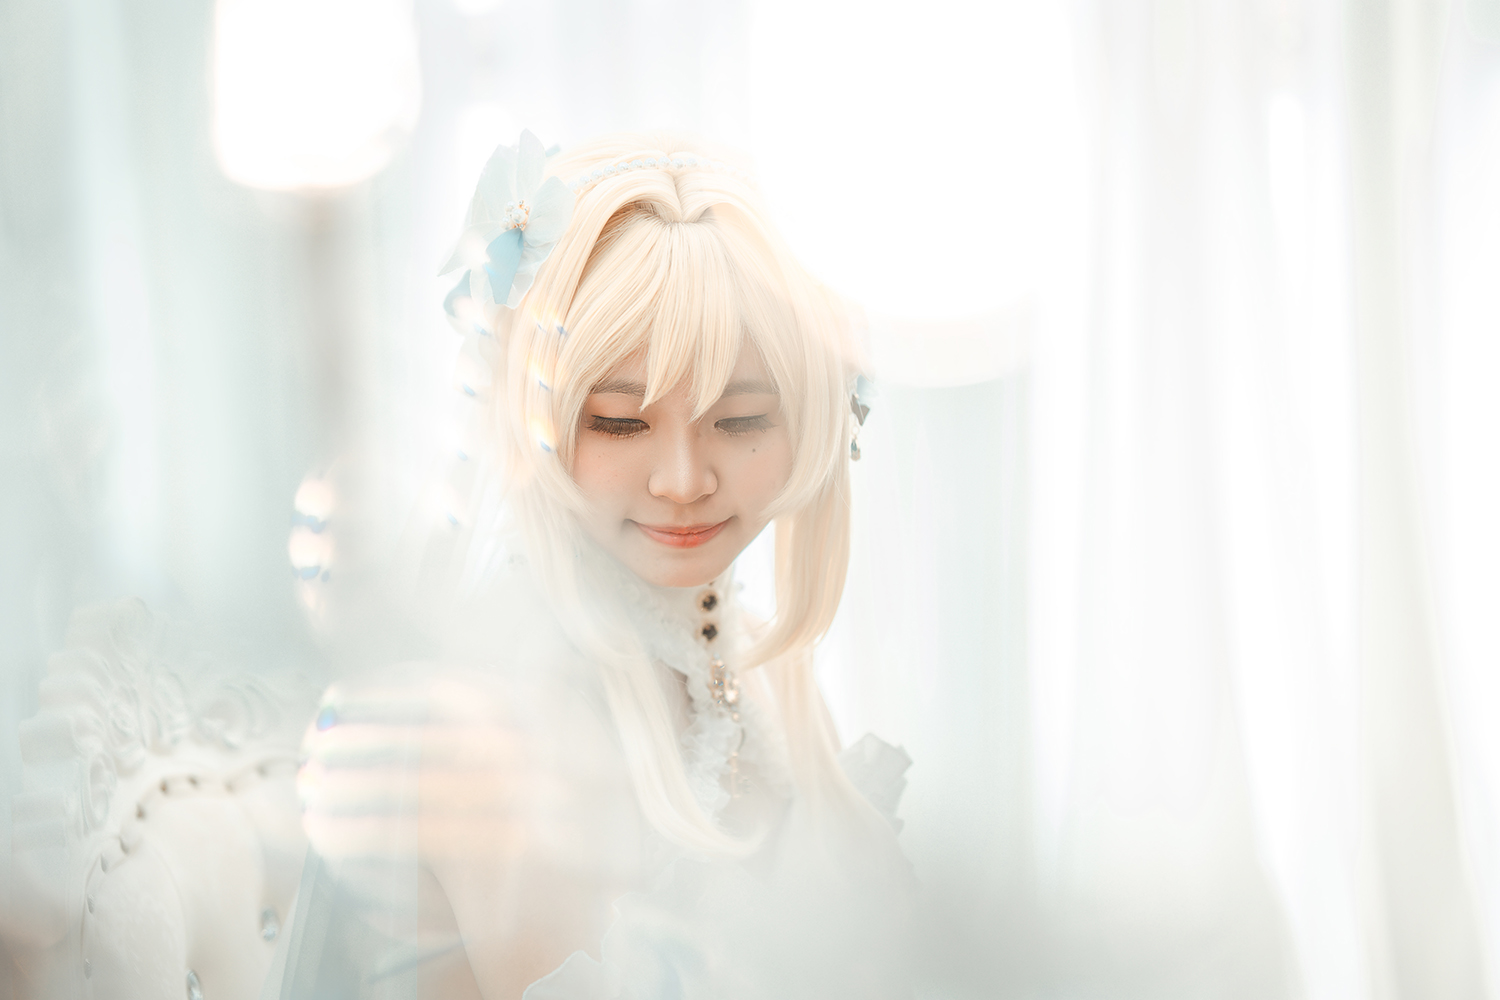 Genshin Impact Lumine bride cosplay photoshoot in Singapore.